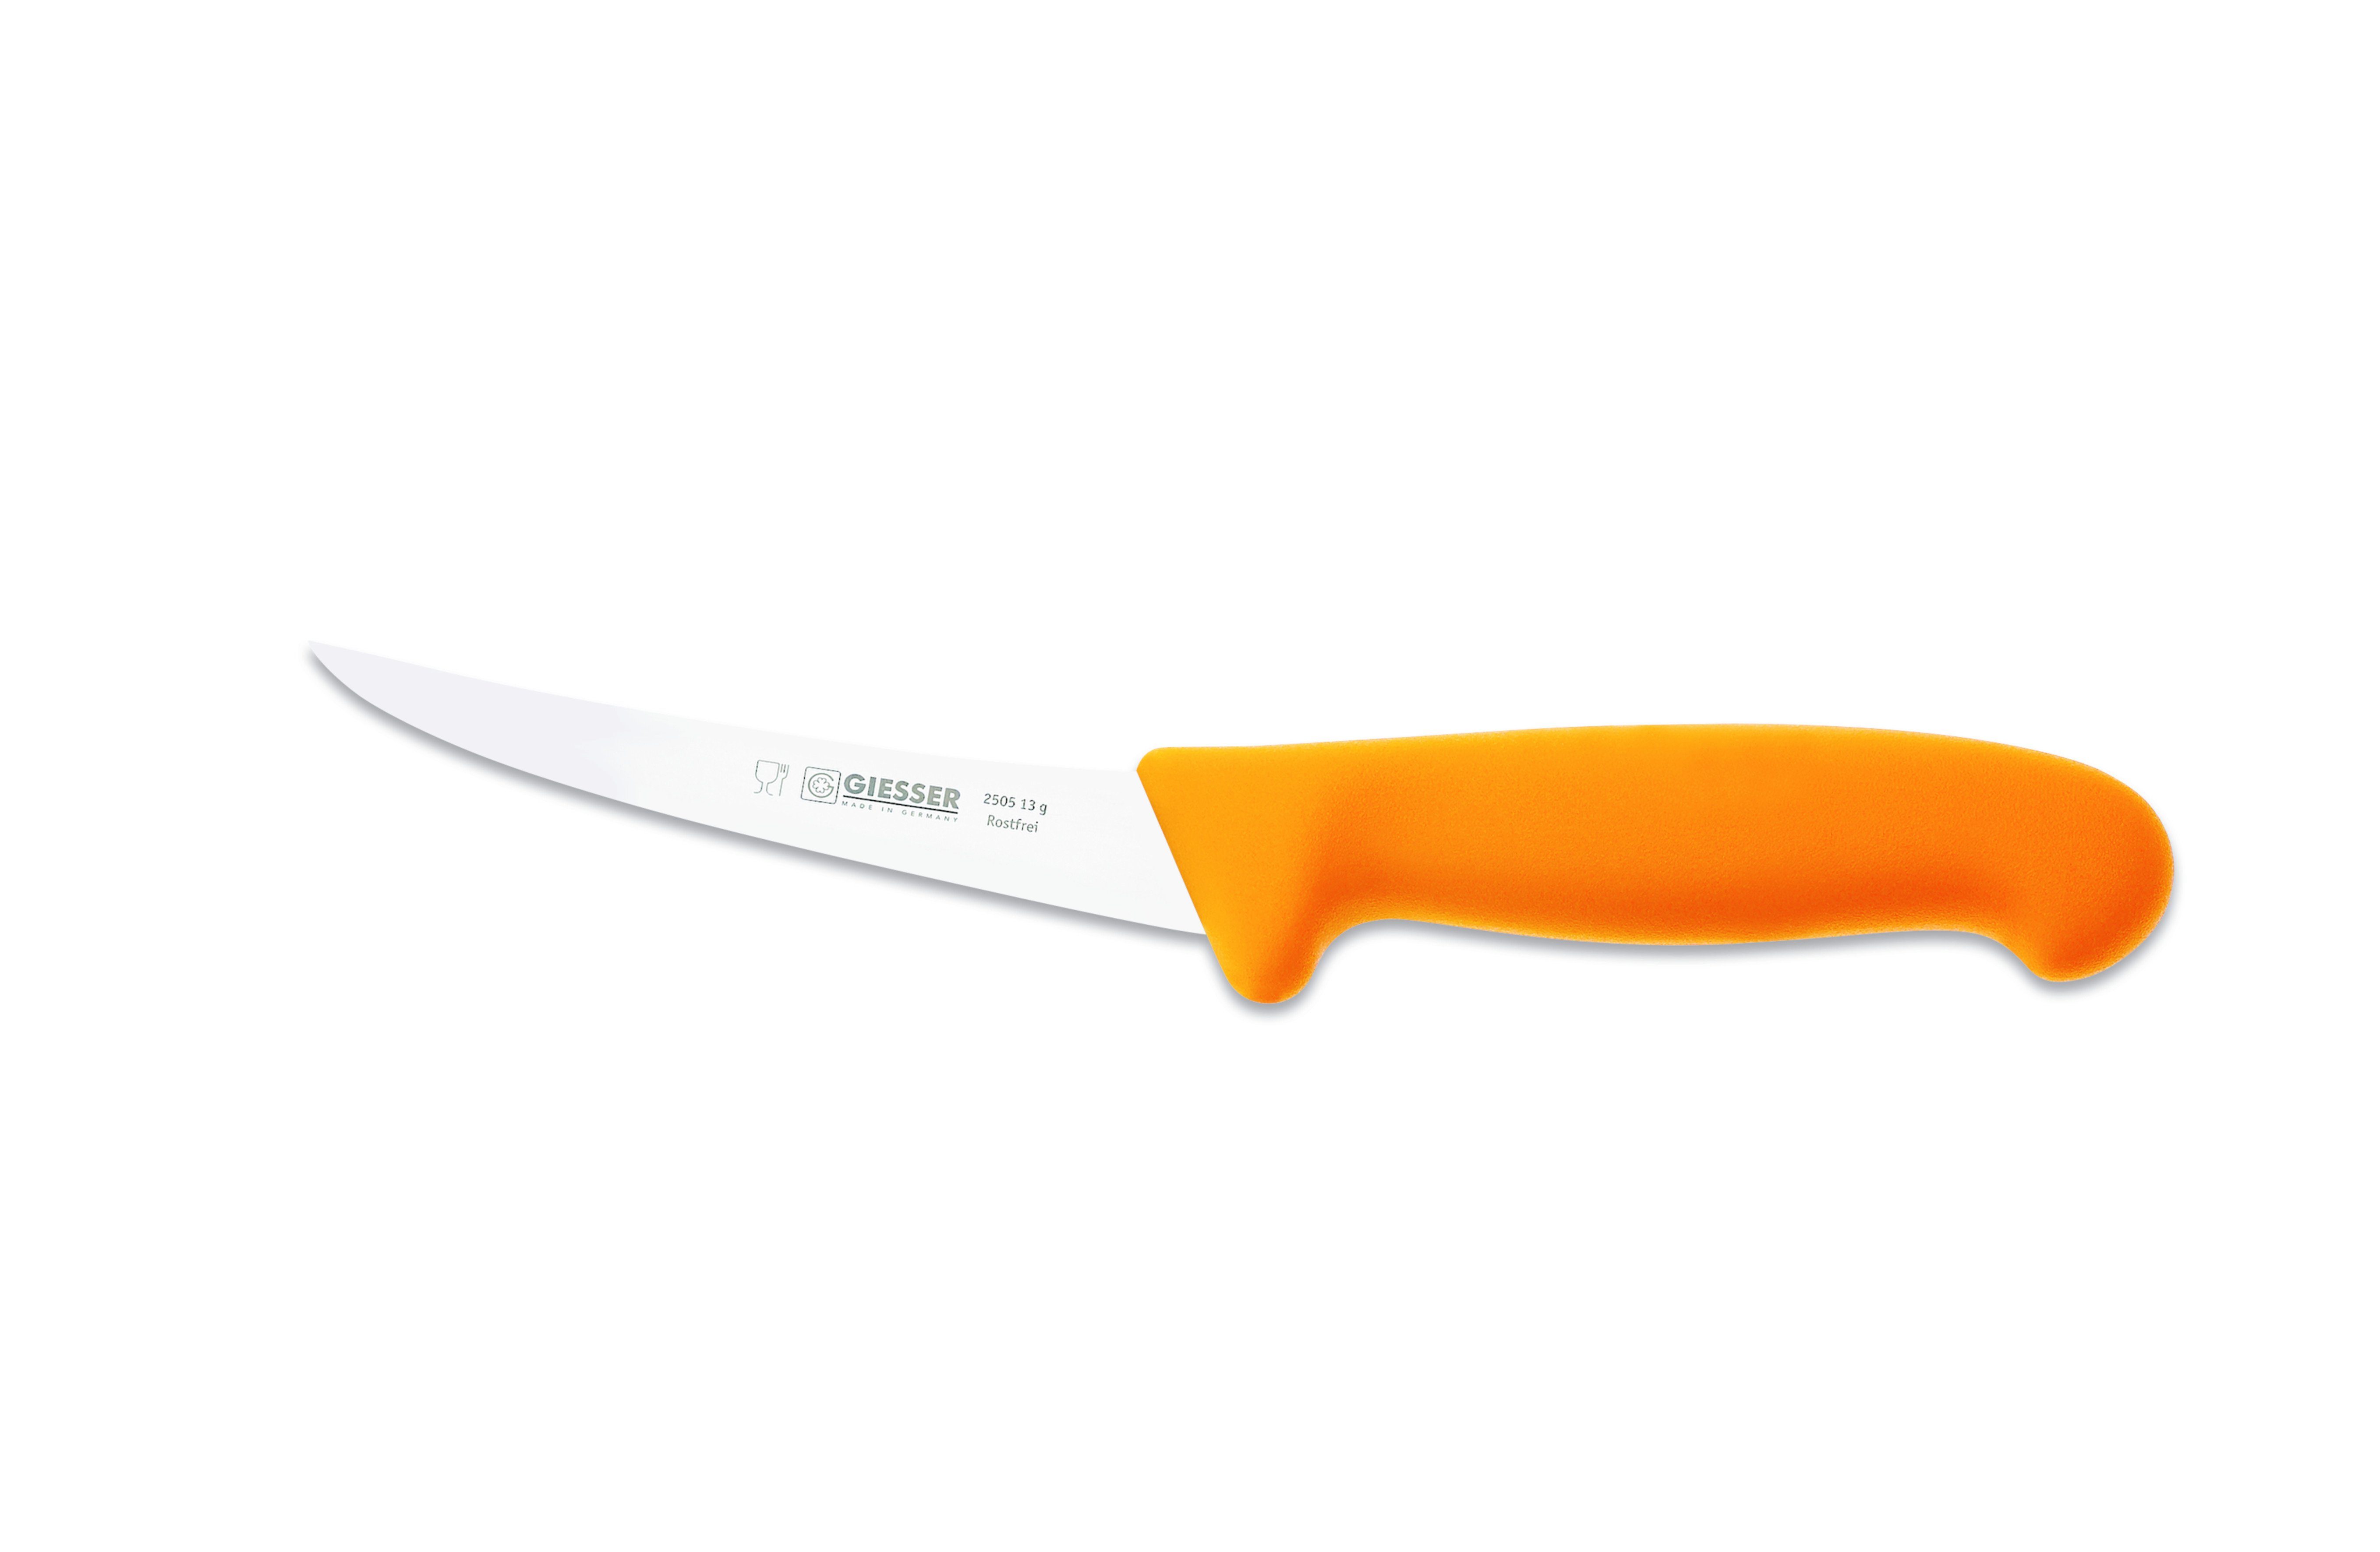 Giesser Messer Ausbeinmesser Fleischermesser 2505 13-17, Klingenstärke: sehr flexibel, flexibel, stark Gelb